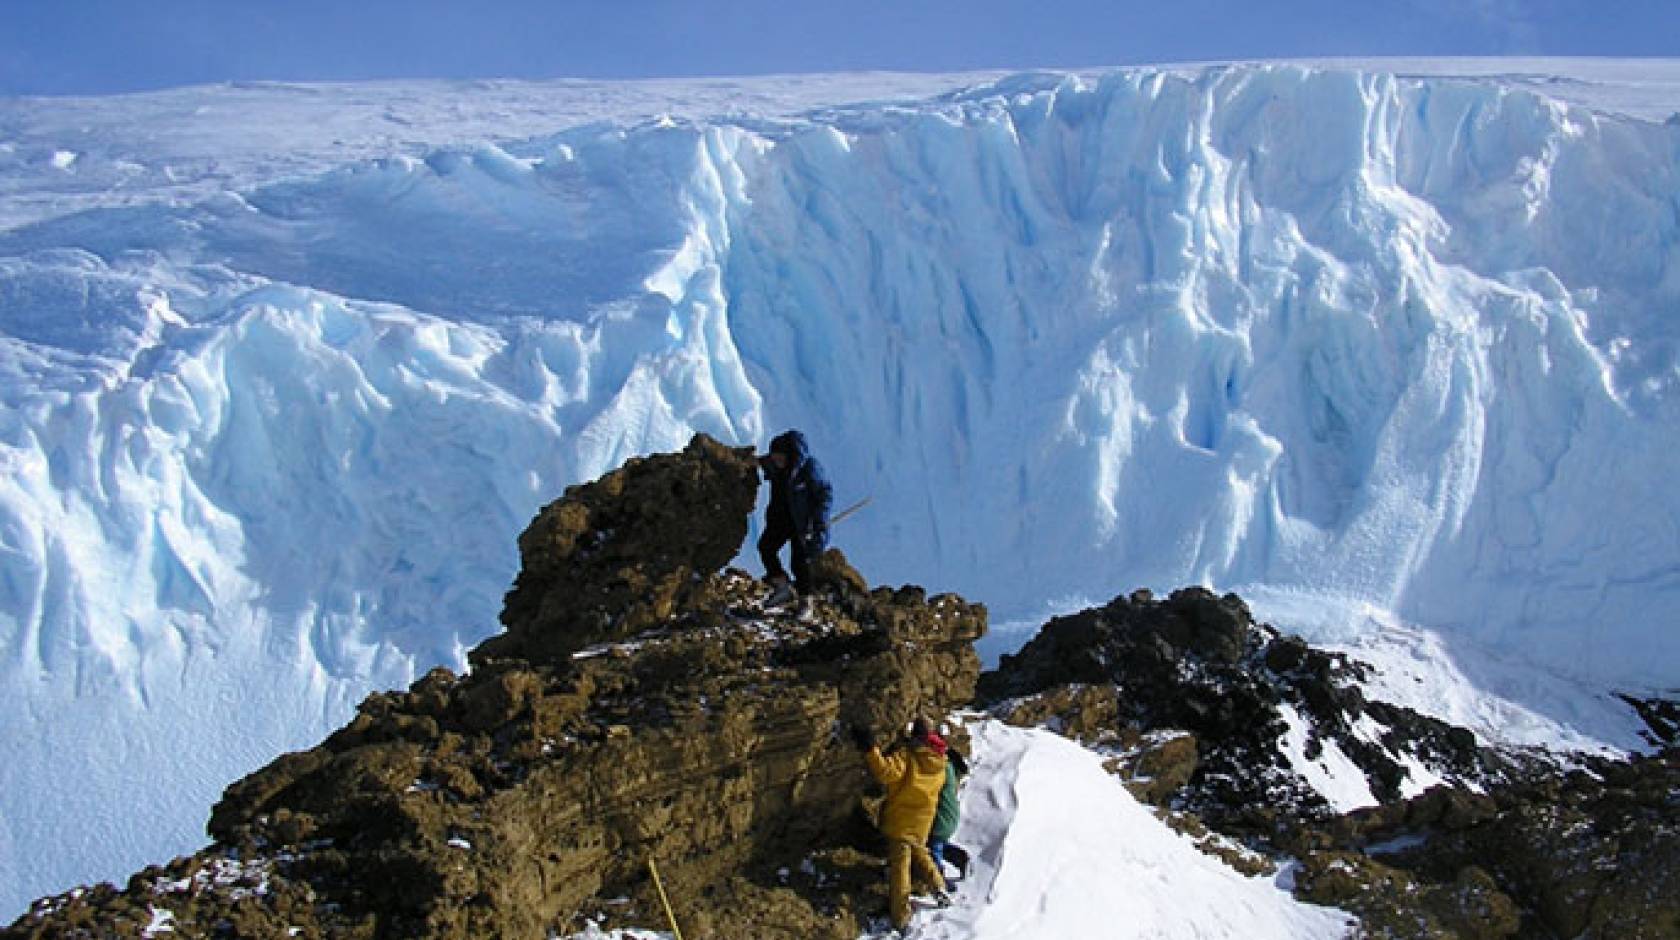 climbing rocks for samples - Antarctica